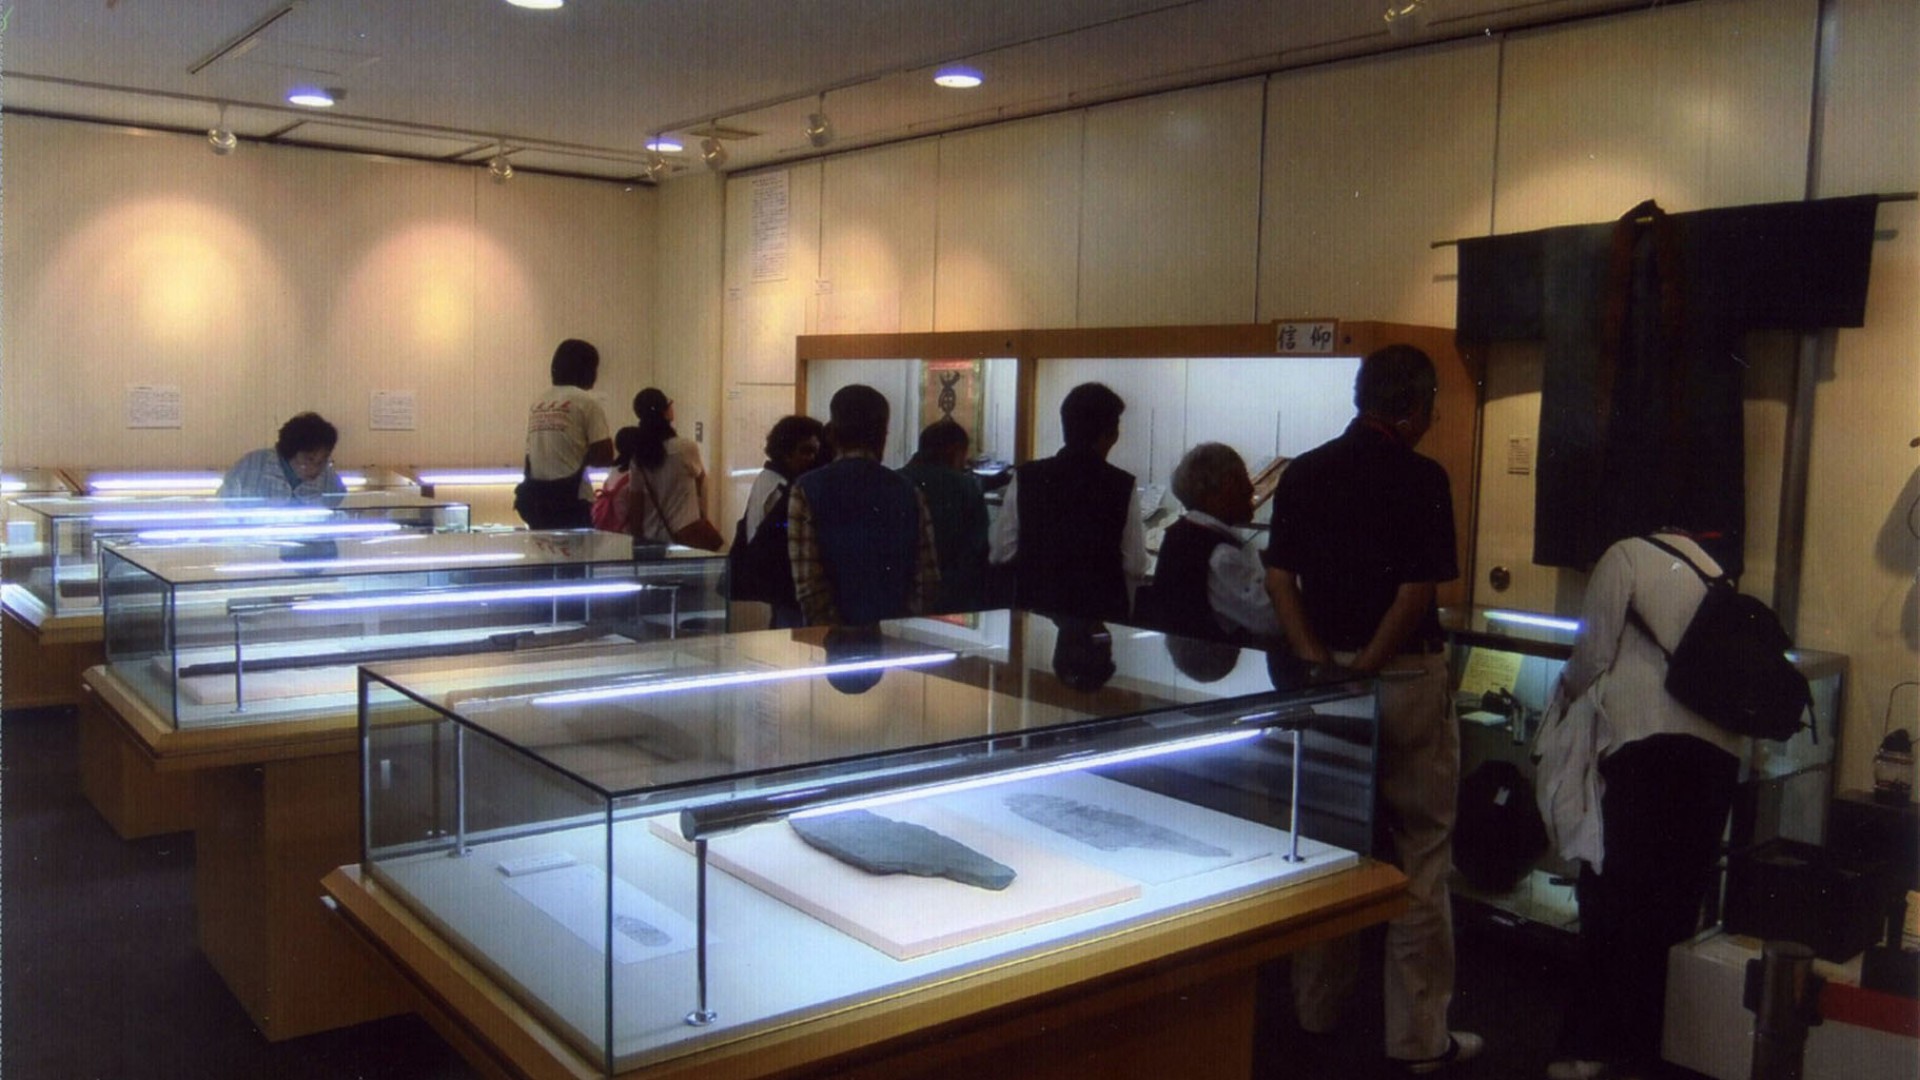 ิพิพิธภัณฑ์ประวัติศาสตร์ท้องถิ่นคะคิโอะ